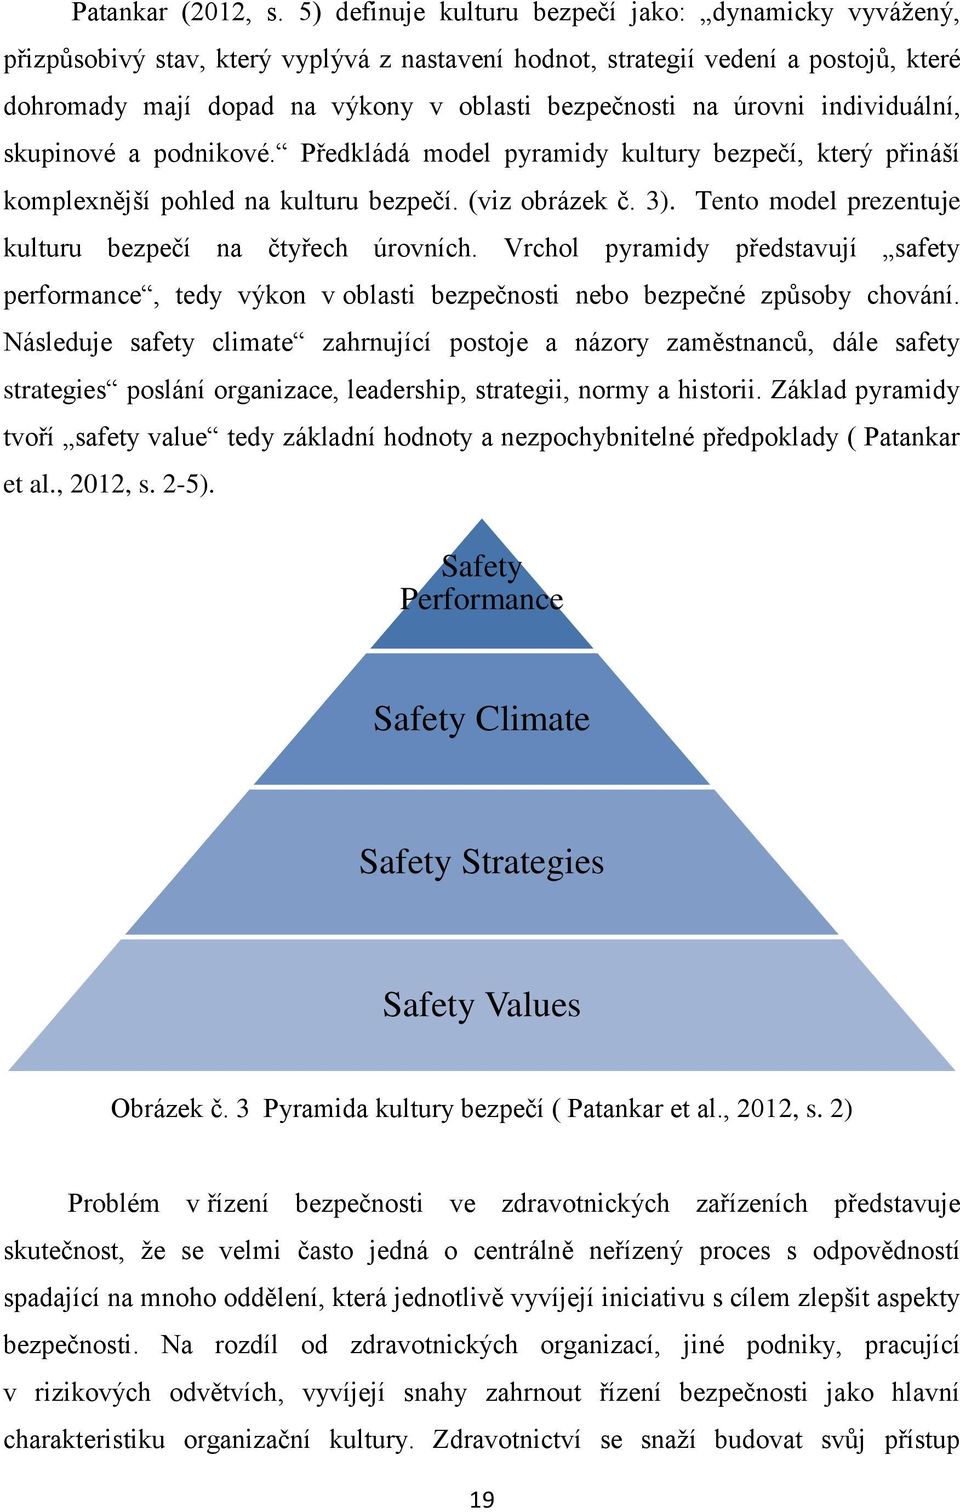 úrovni individuální, skupinové a podnikové. Předkládá model pyramidy kultury bezpečí, který přináší komplexnější pohled na kulturu bezpečí. (viz obrázek č. 3).